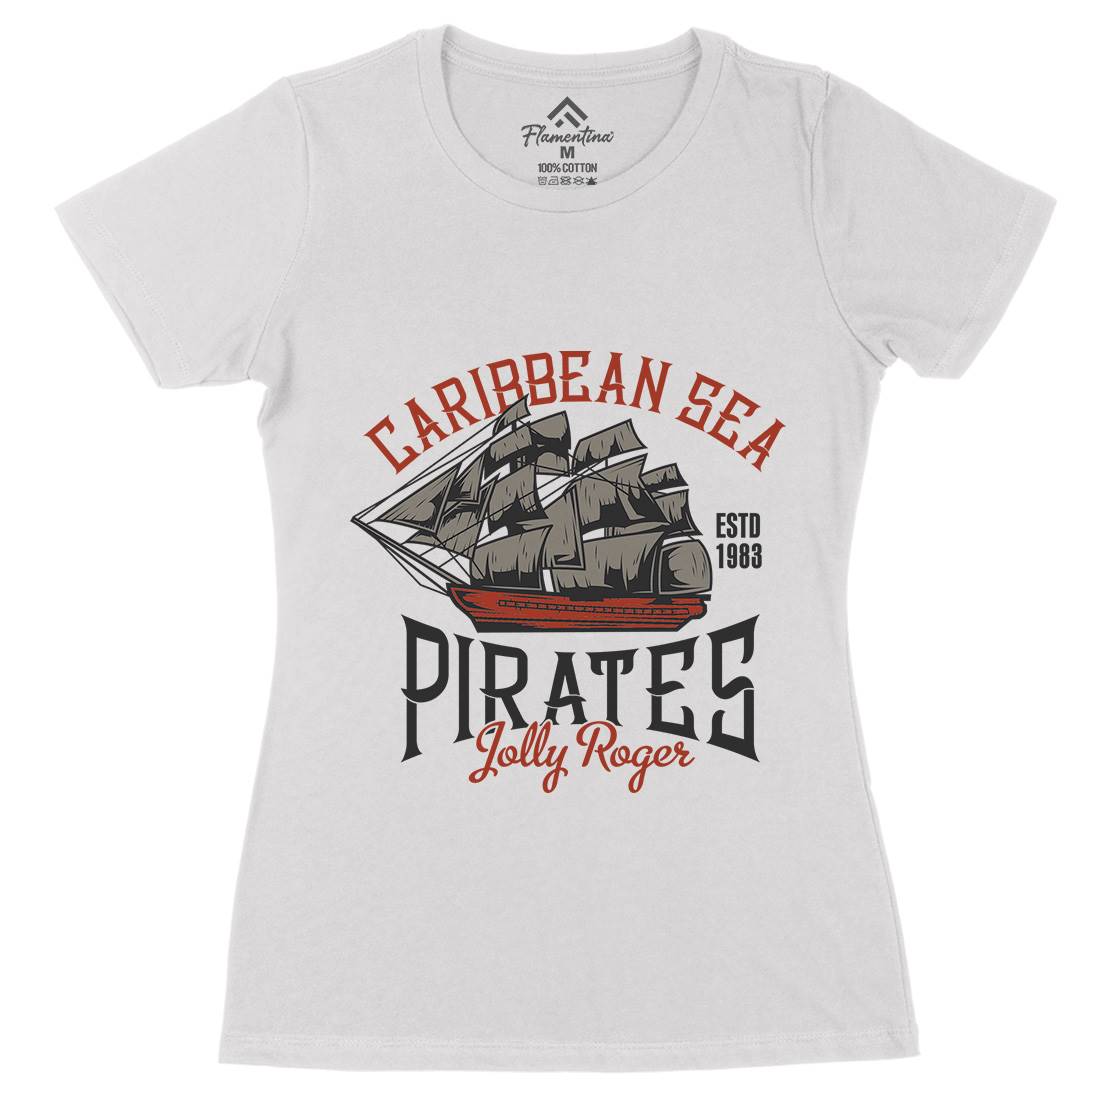 Pirate Womens Organic Crew Neck T-Shirt Navy B157